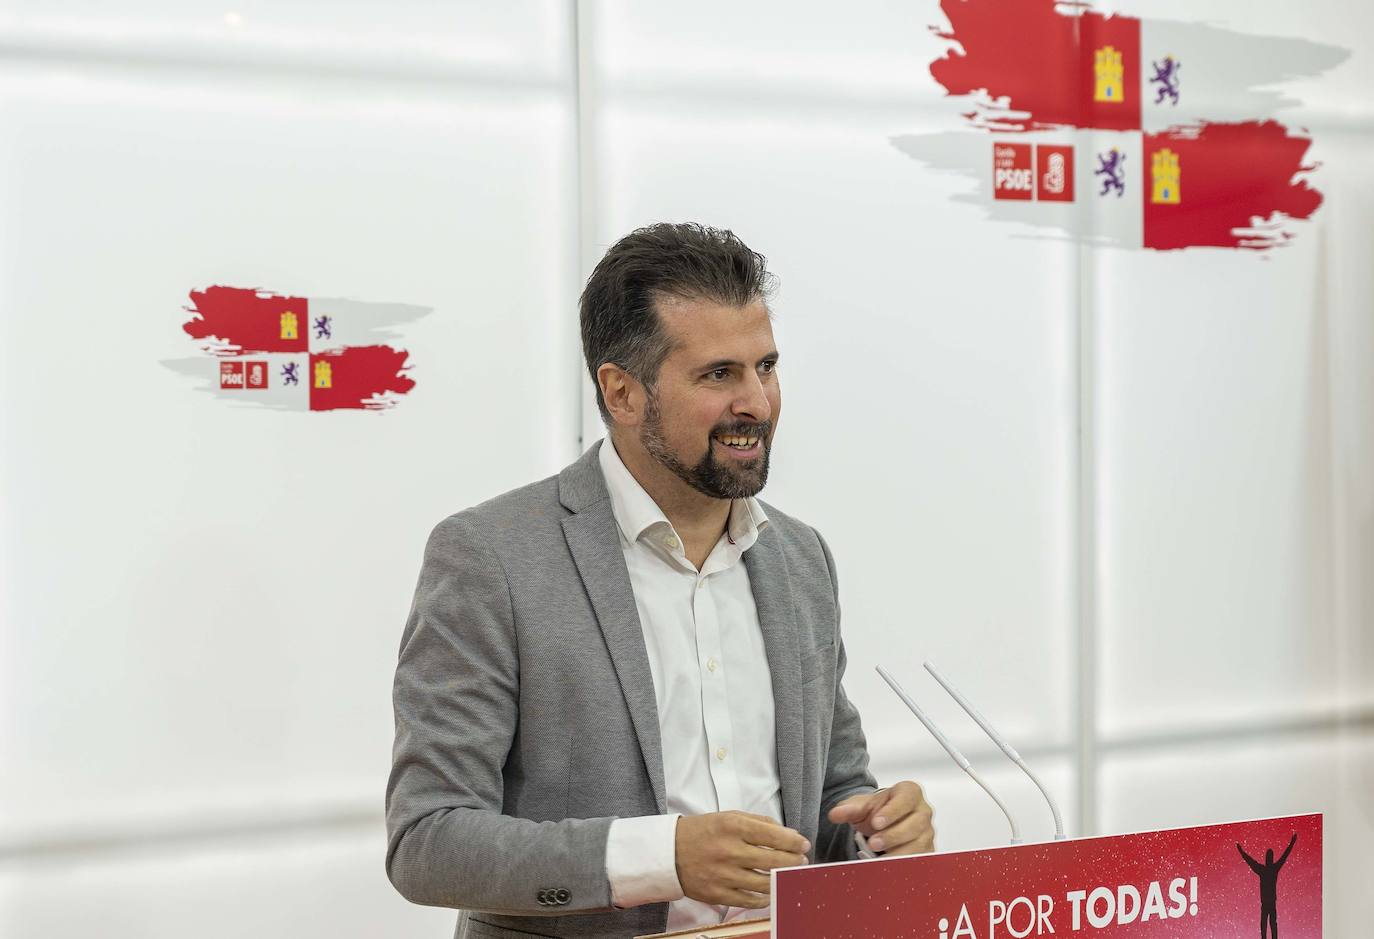 El secretario general del PSOE-CyL, Luis Tudanca, analiza asuntos de actualidad política.